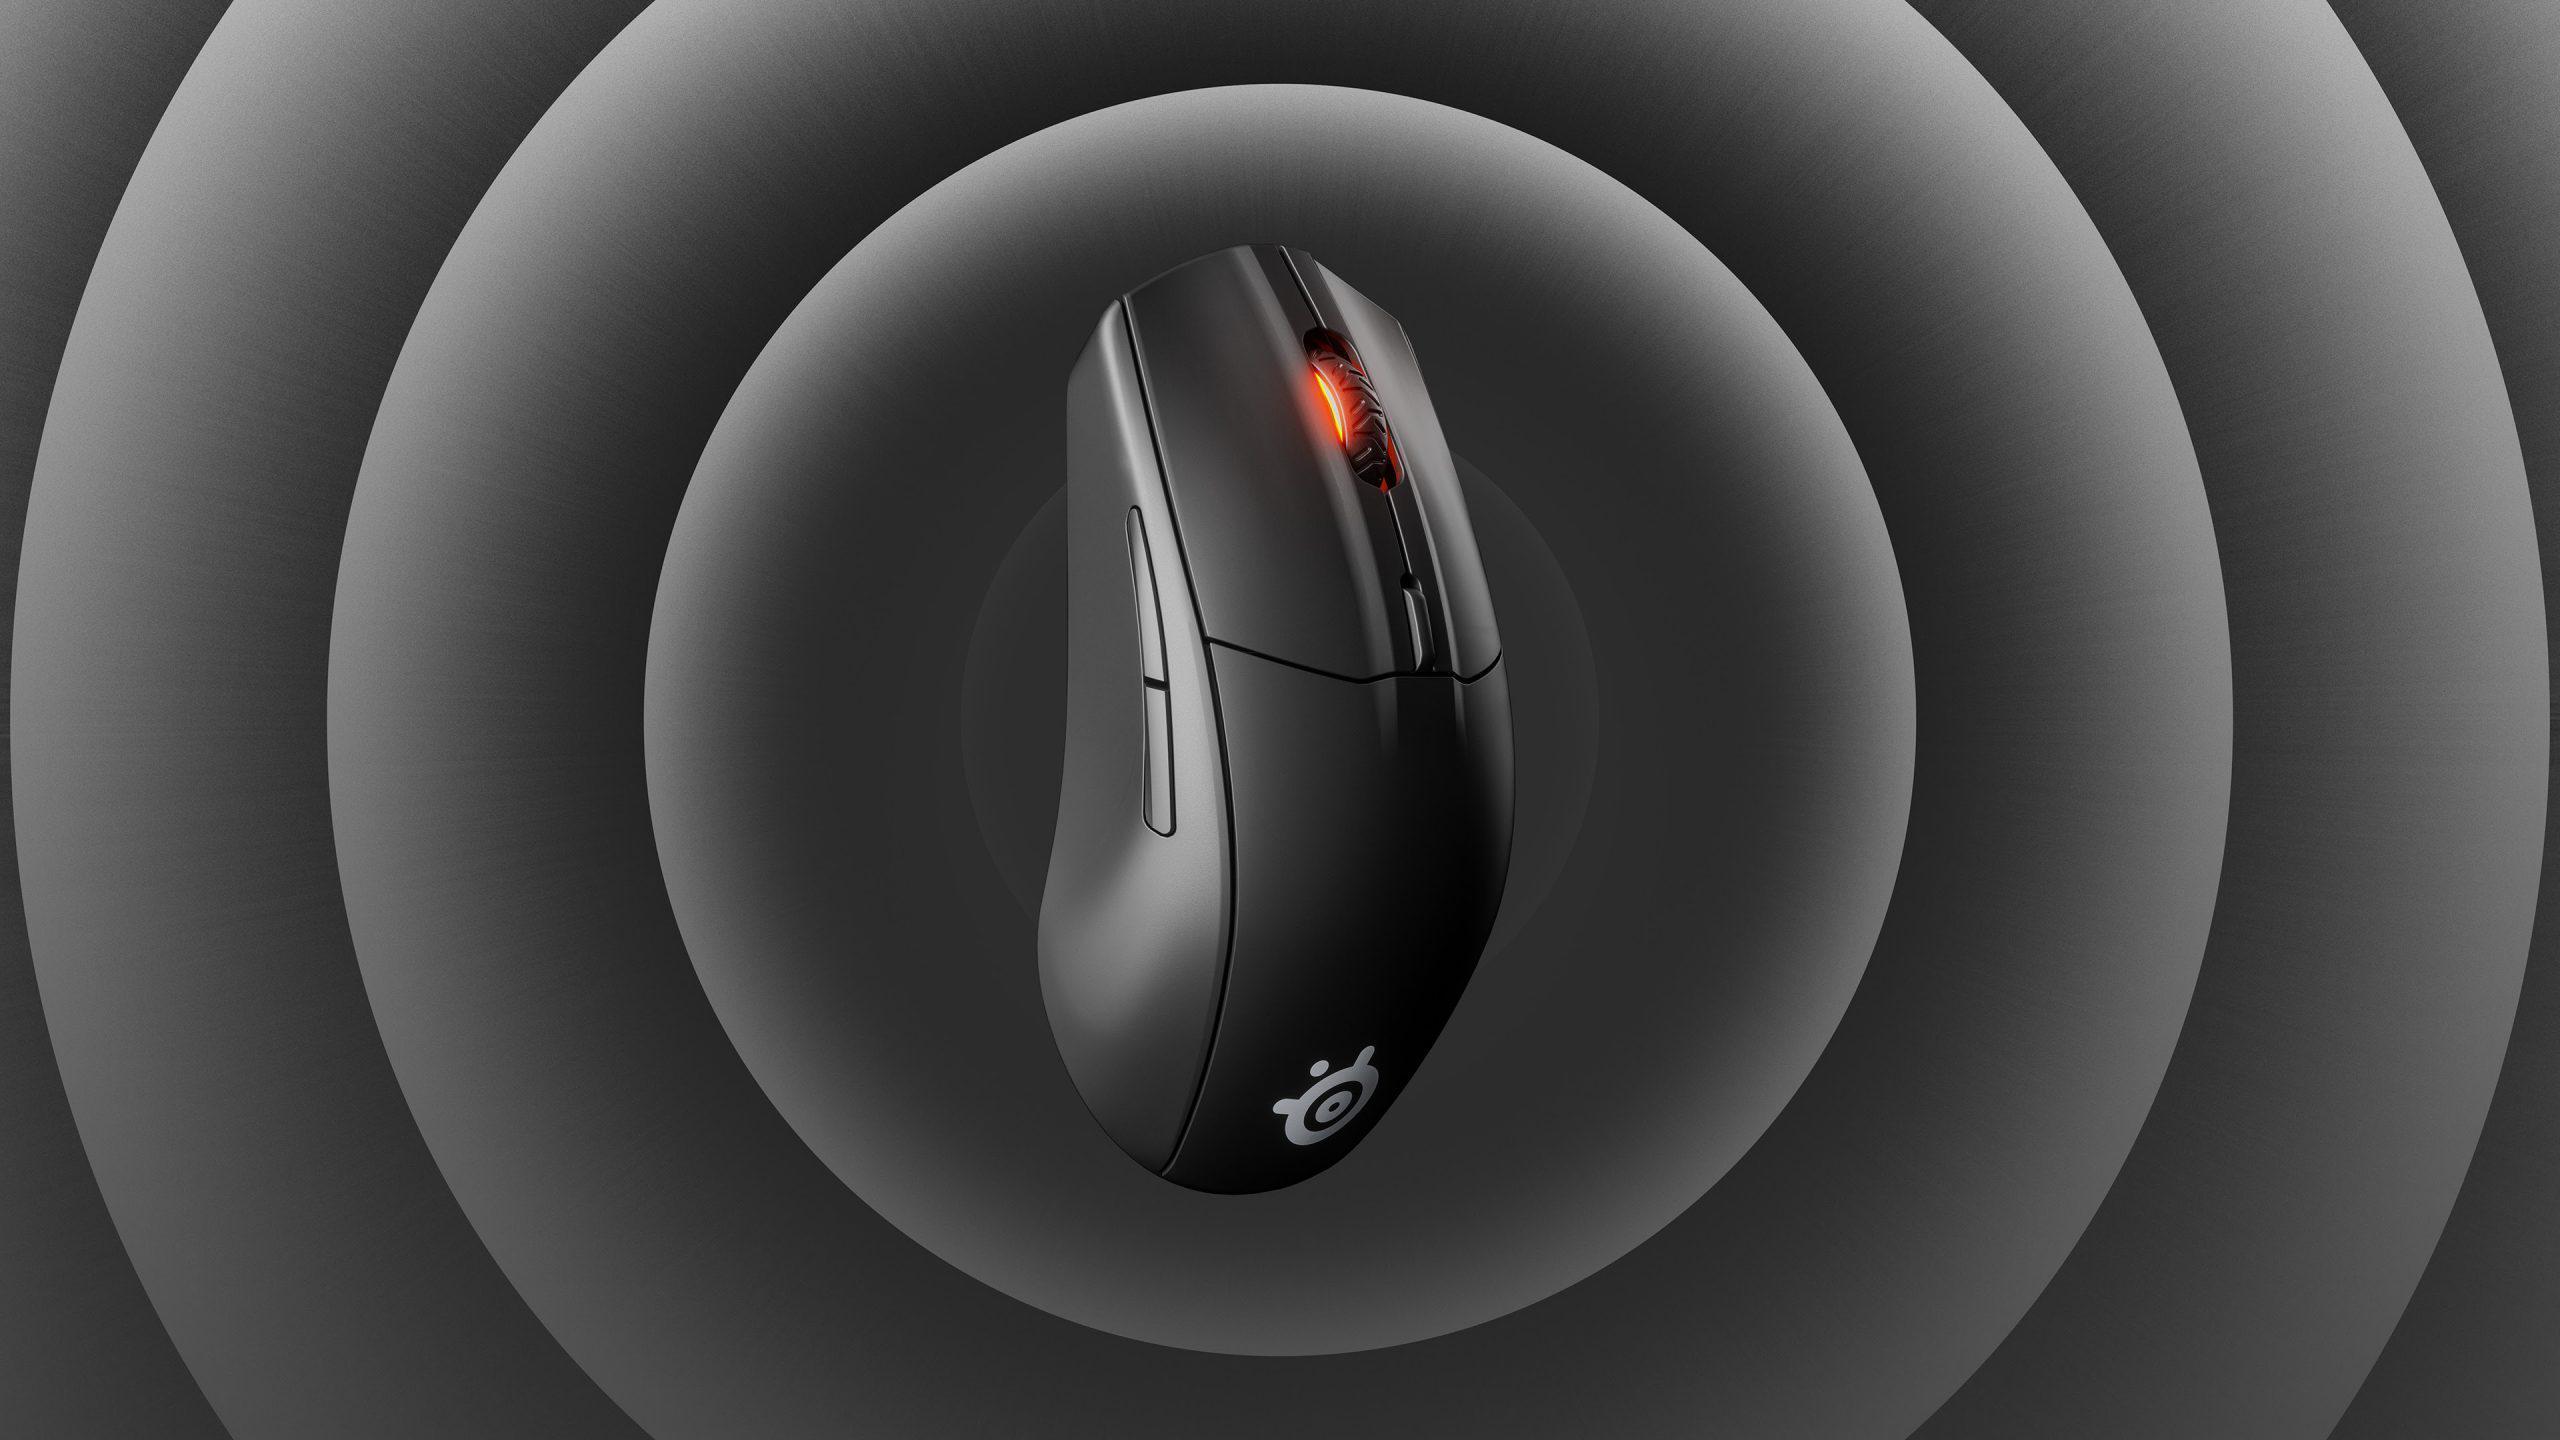 SteelSeries Rival 3 Wireless inceleme - Hem oyun hem de iş için tasarlanan mouse